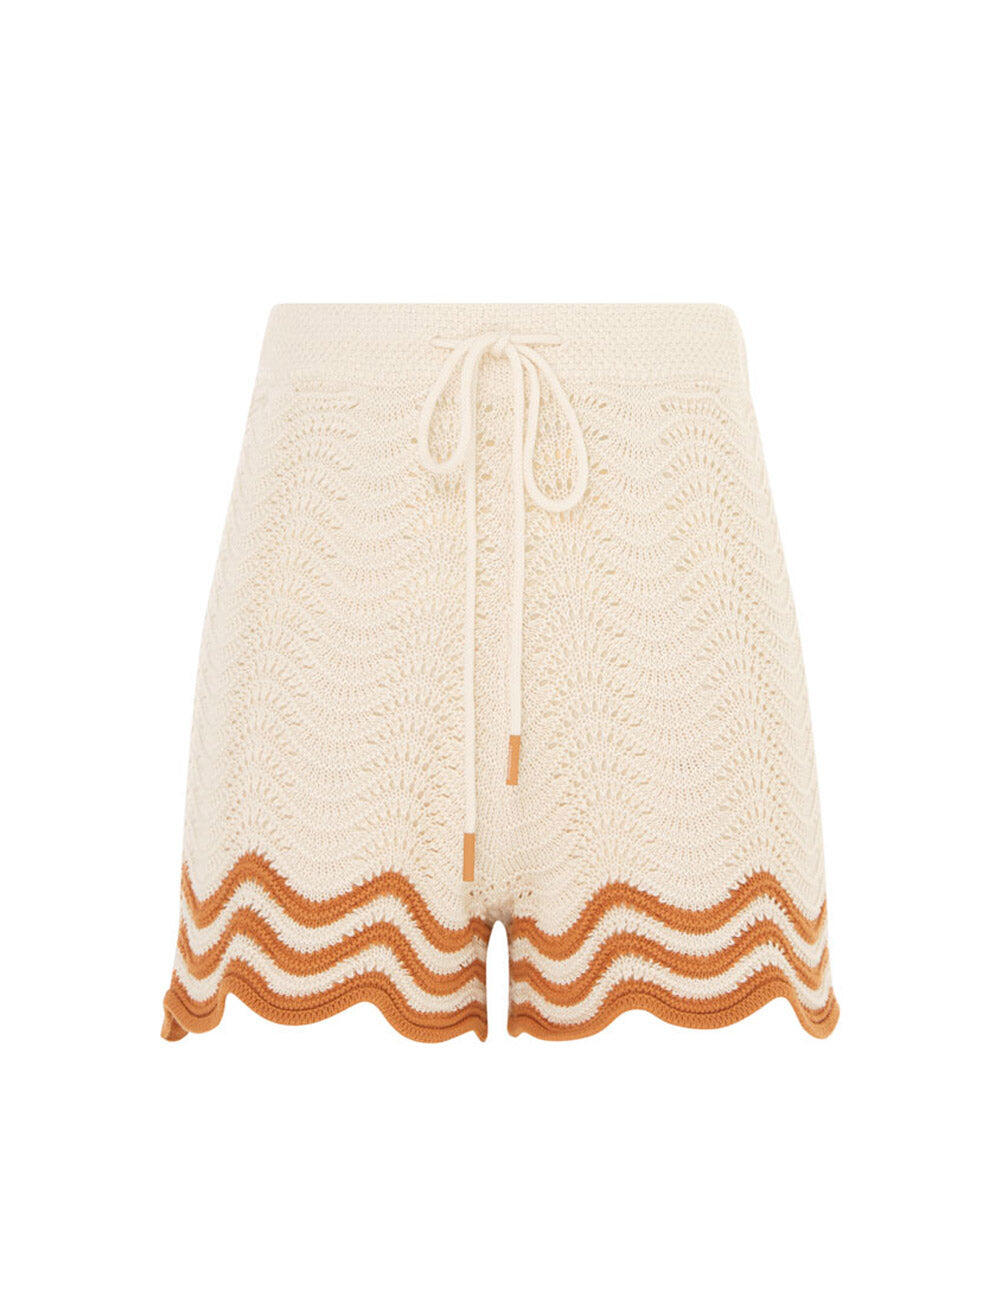 Junie Textured Knit Shorts Tan/Cream